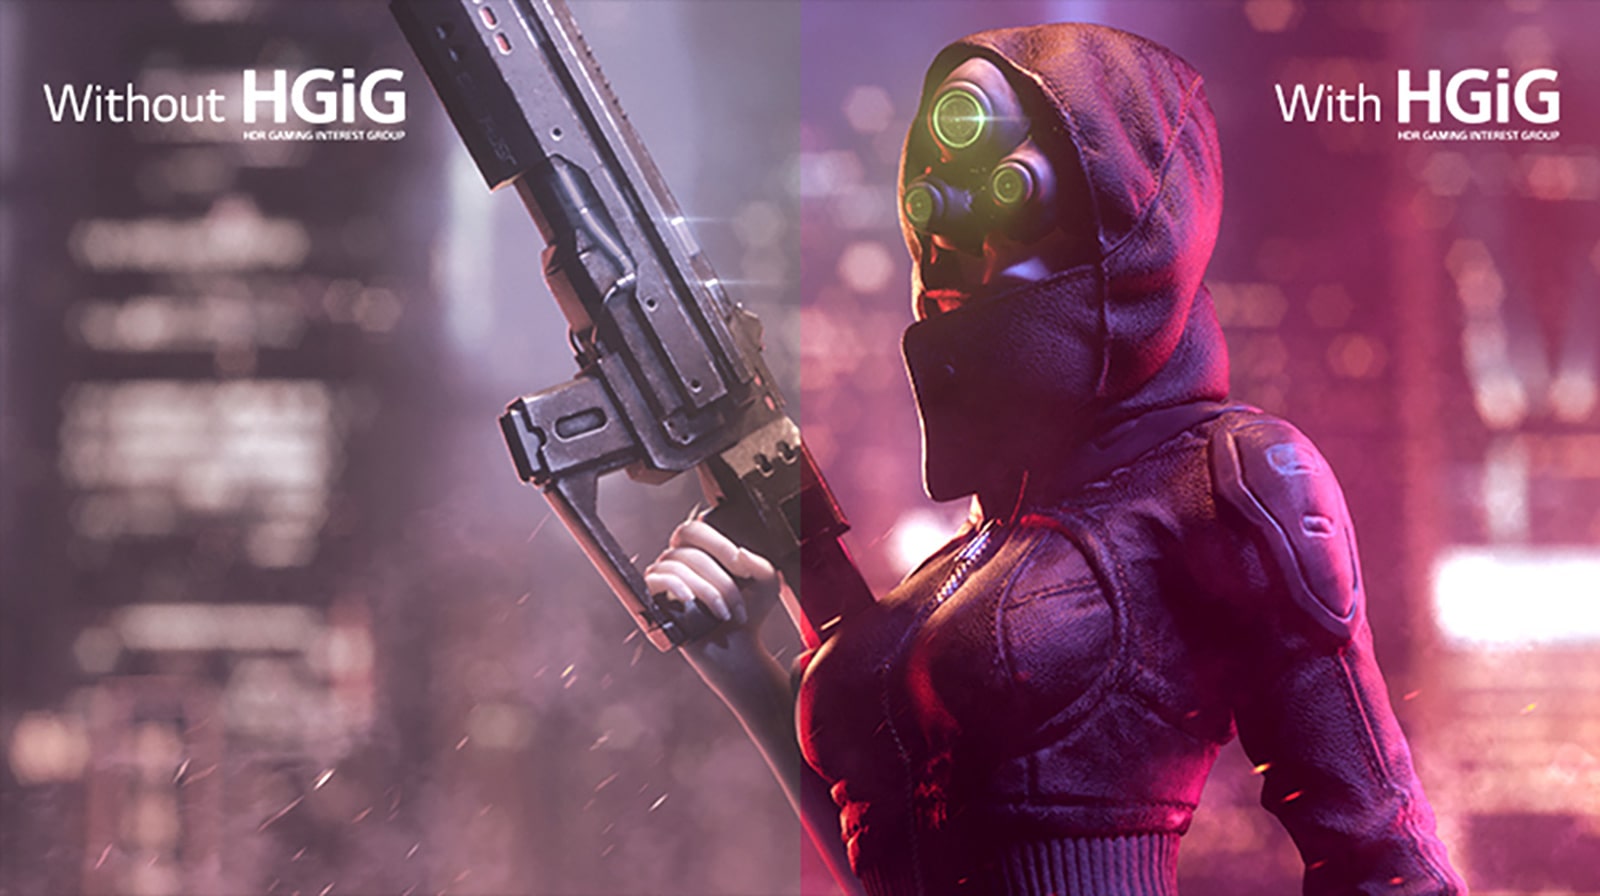 A képen egy fegyvert tartó nő látható, az arcát teljesen eltakarja egy maszk. A kép bal oldali fele fakó és kevésbé színes, a jobb oldali rész pedig viszonylag színesebb.